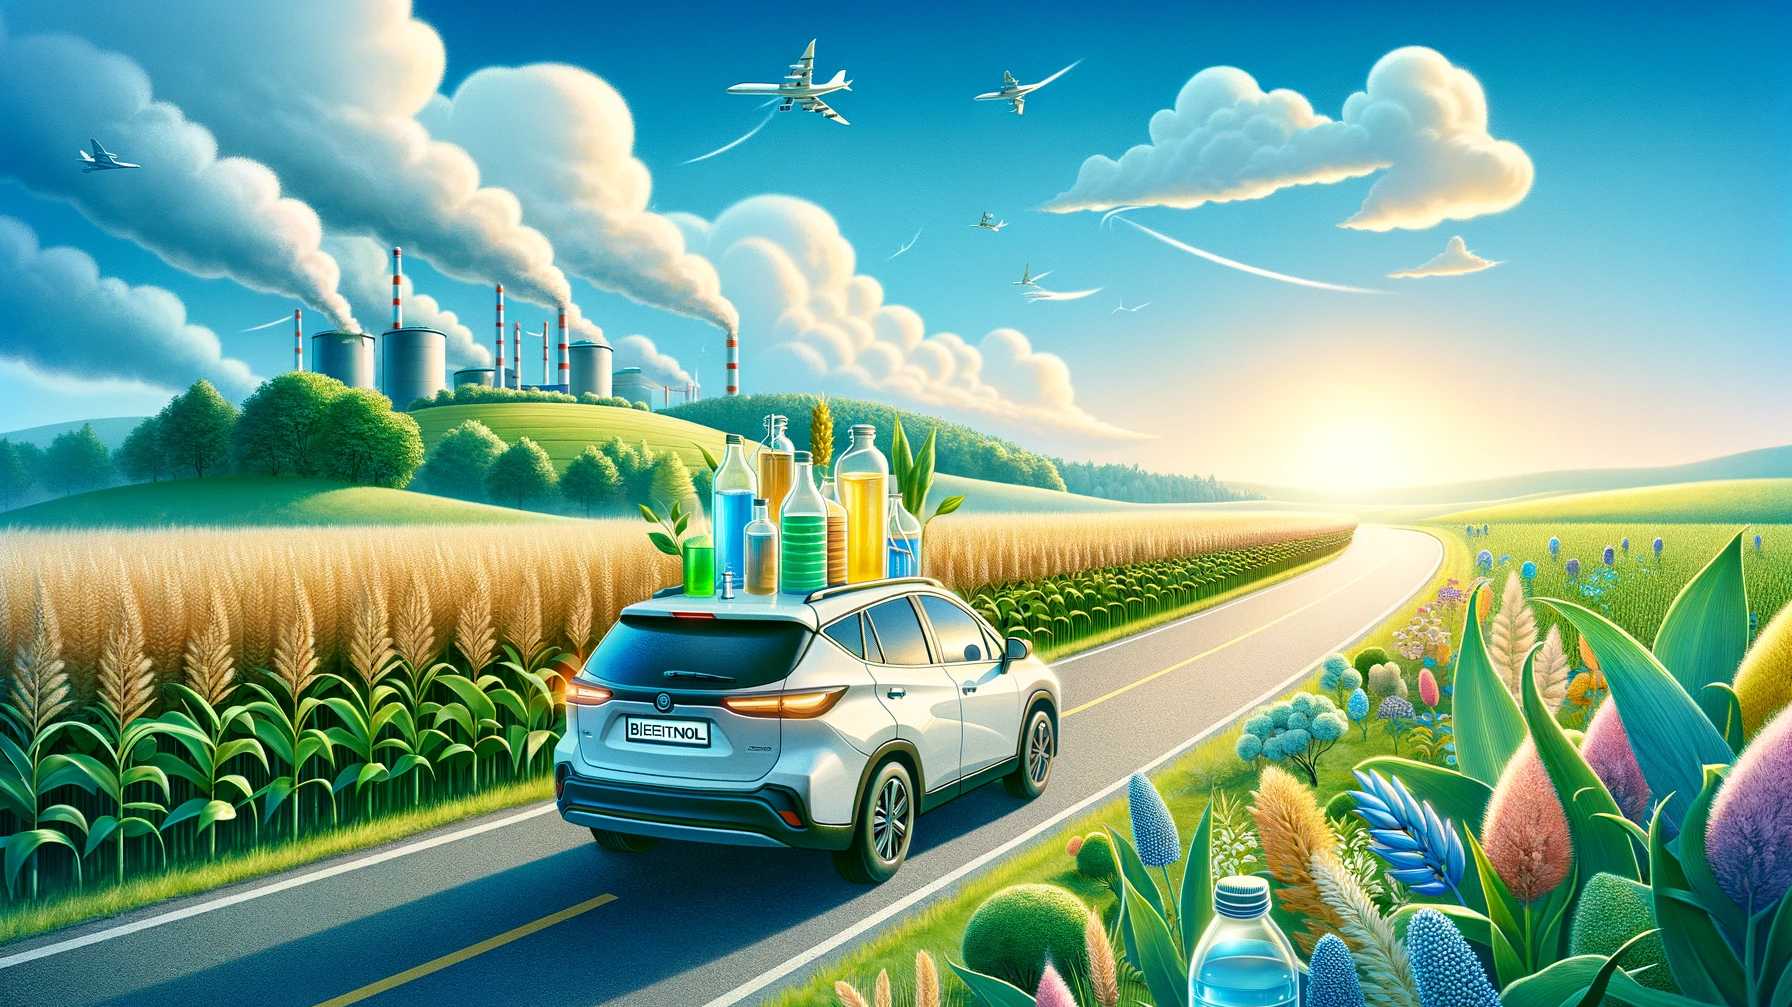 Umweltfreundliche Bioethanol-Kraftstoffalternative in grüner Landschaft